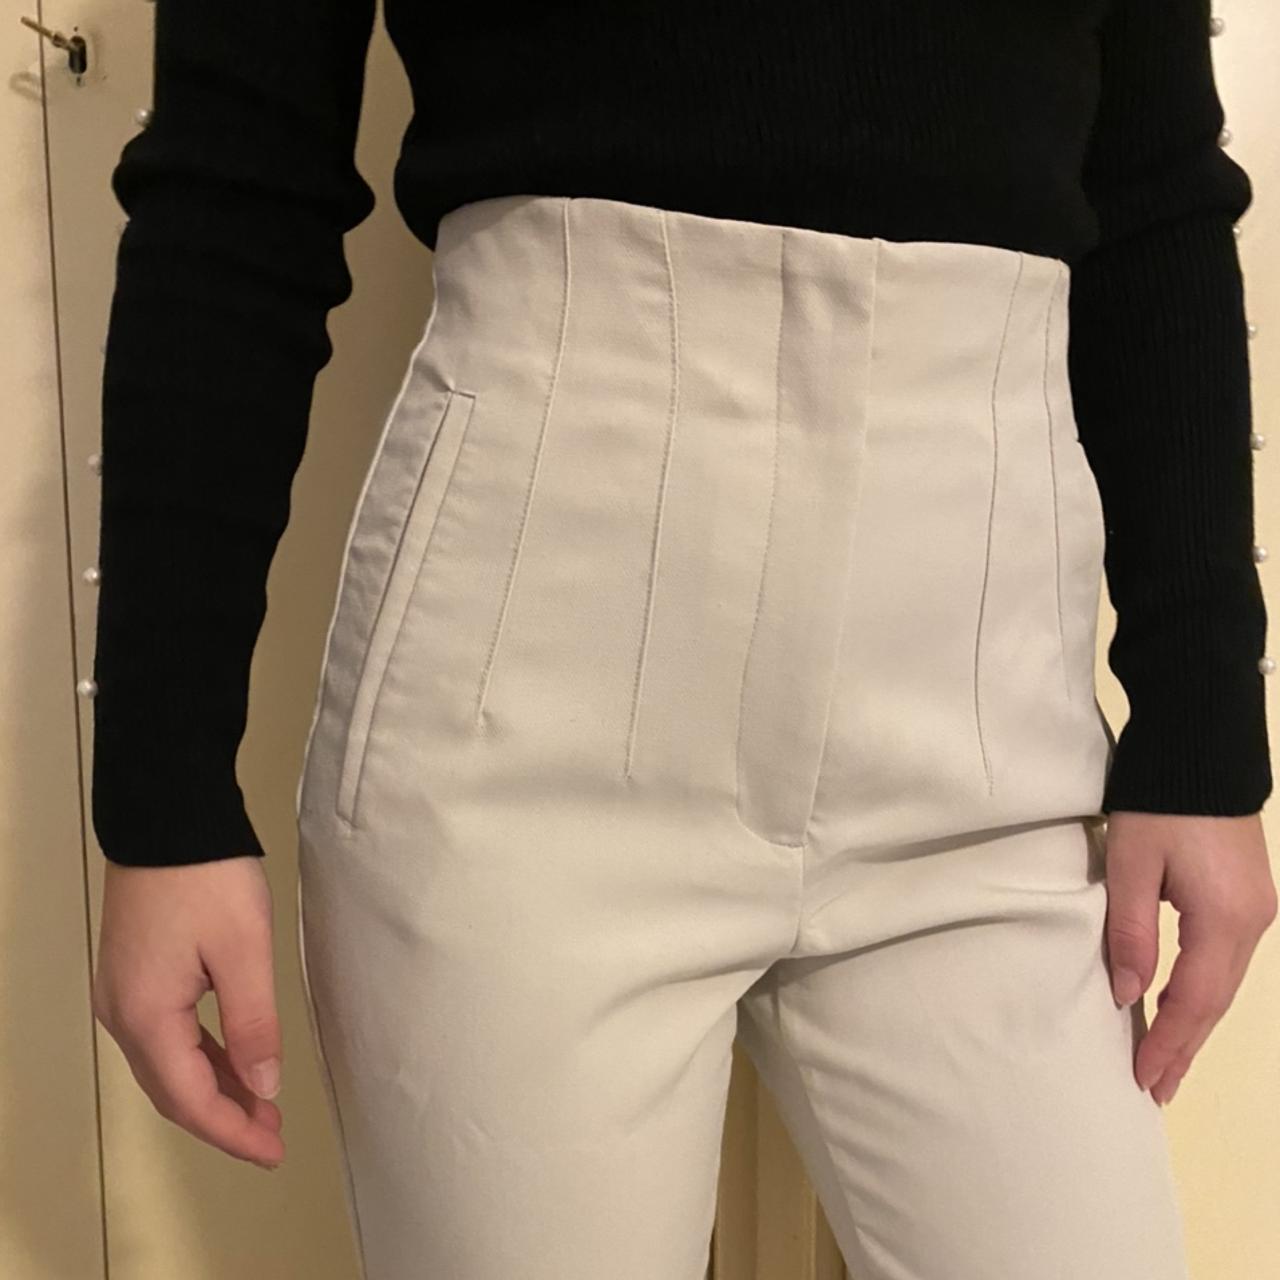 Pantaloni Zara vita alta, eleganti, taglia S. Color - Depop